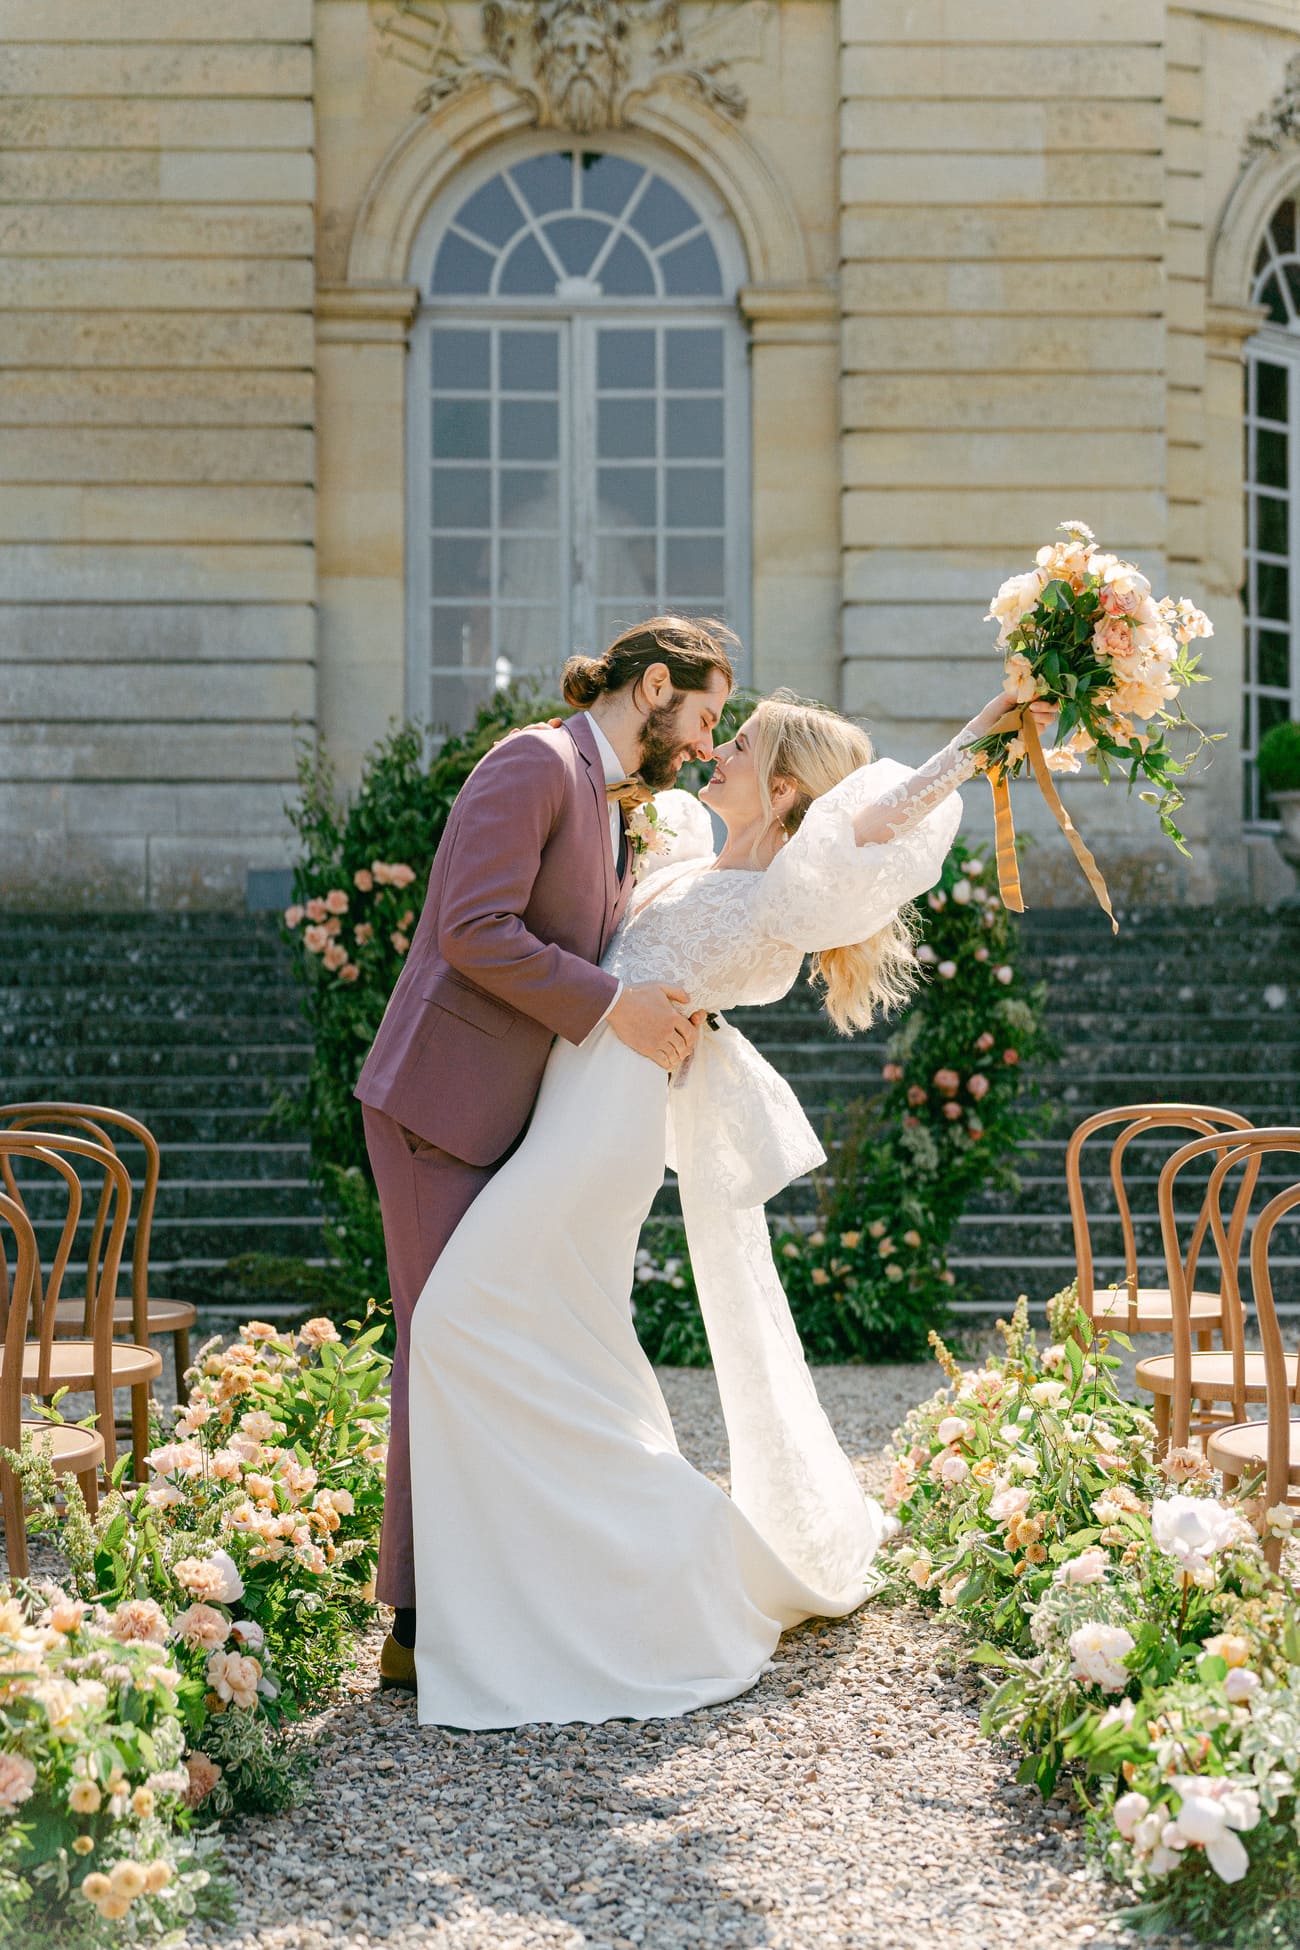 Vor dem historischen Hintergrund eines eleganten Schlosses in Frankreich nahe Paris, die Braut jubelnd mit einem großen, bunten Blumenstrauß in der Hand, gehalten von einem stilvoll gekleideten Bräutigam in einem dunkelroten Anzug.